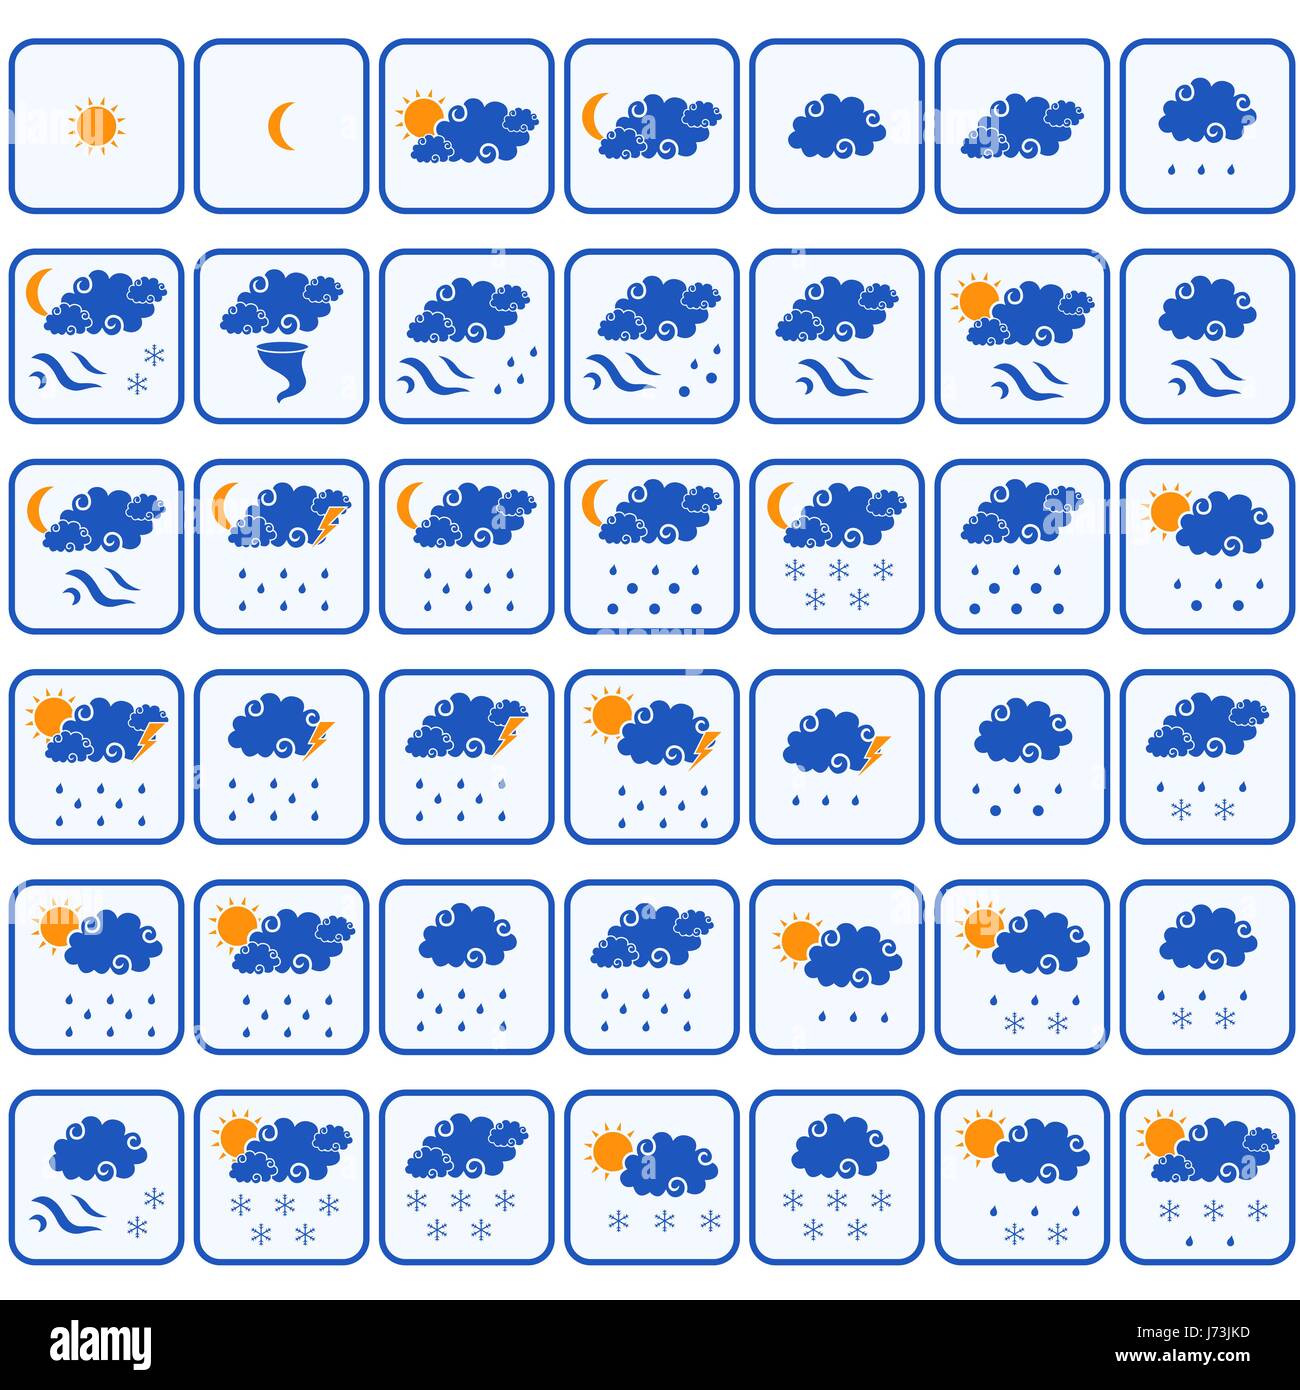 Satz von zweiundvierzig Wettervorhersage Farbe Vektor-Icons auf dem weißen Hintergrund isoliert Stock Vektor